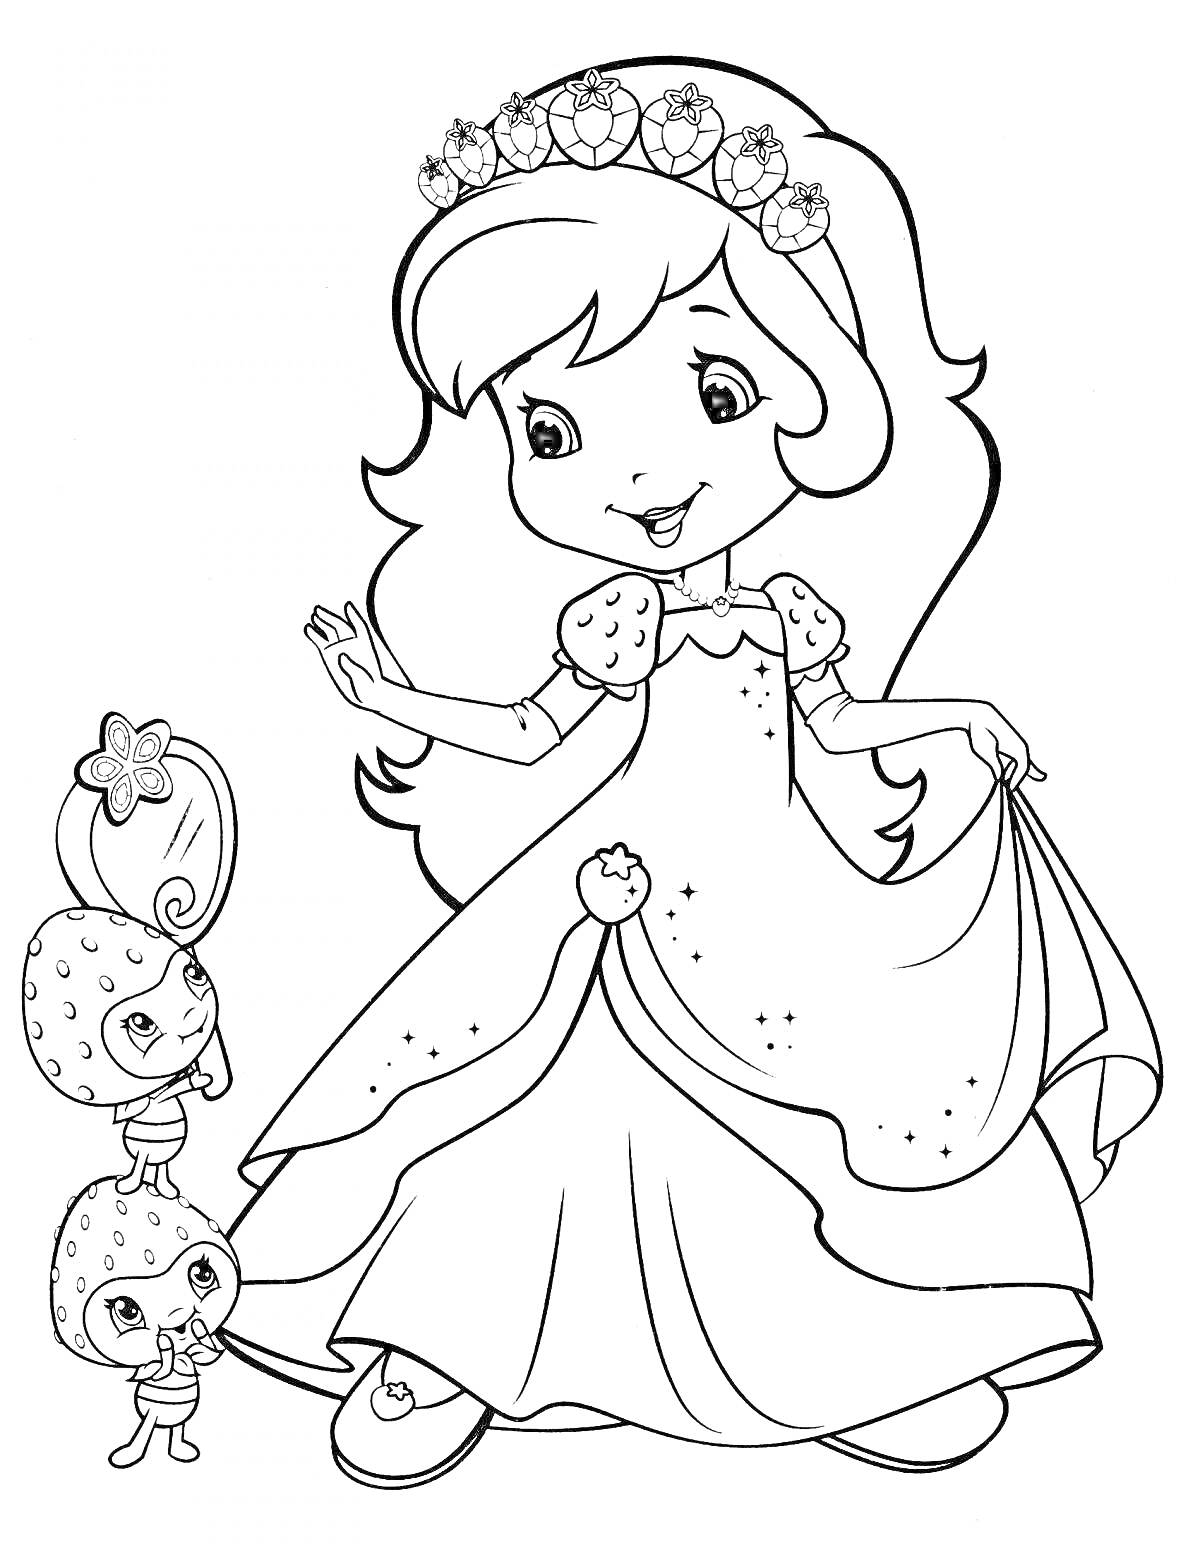 Раскраска Принцесса с цветочной короной и ягодными персонажами держит платье